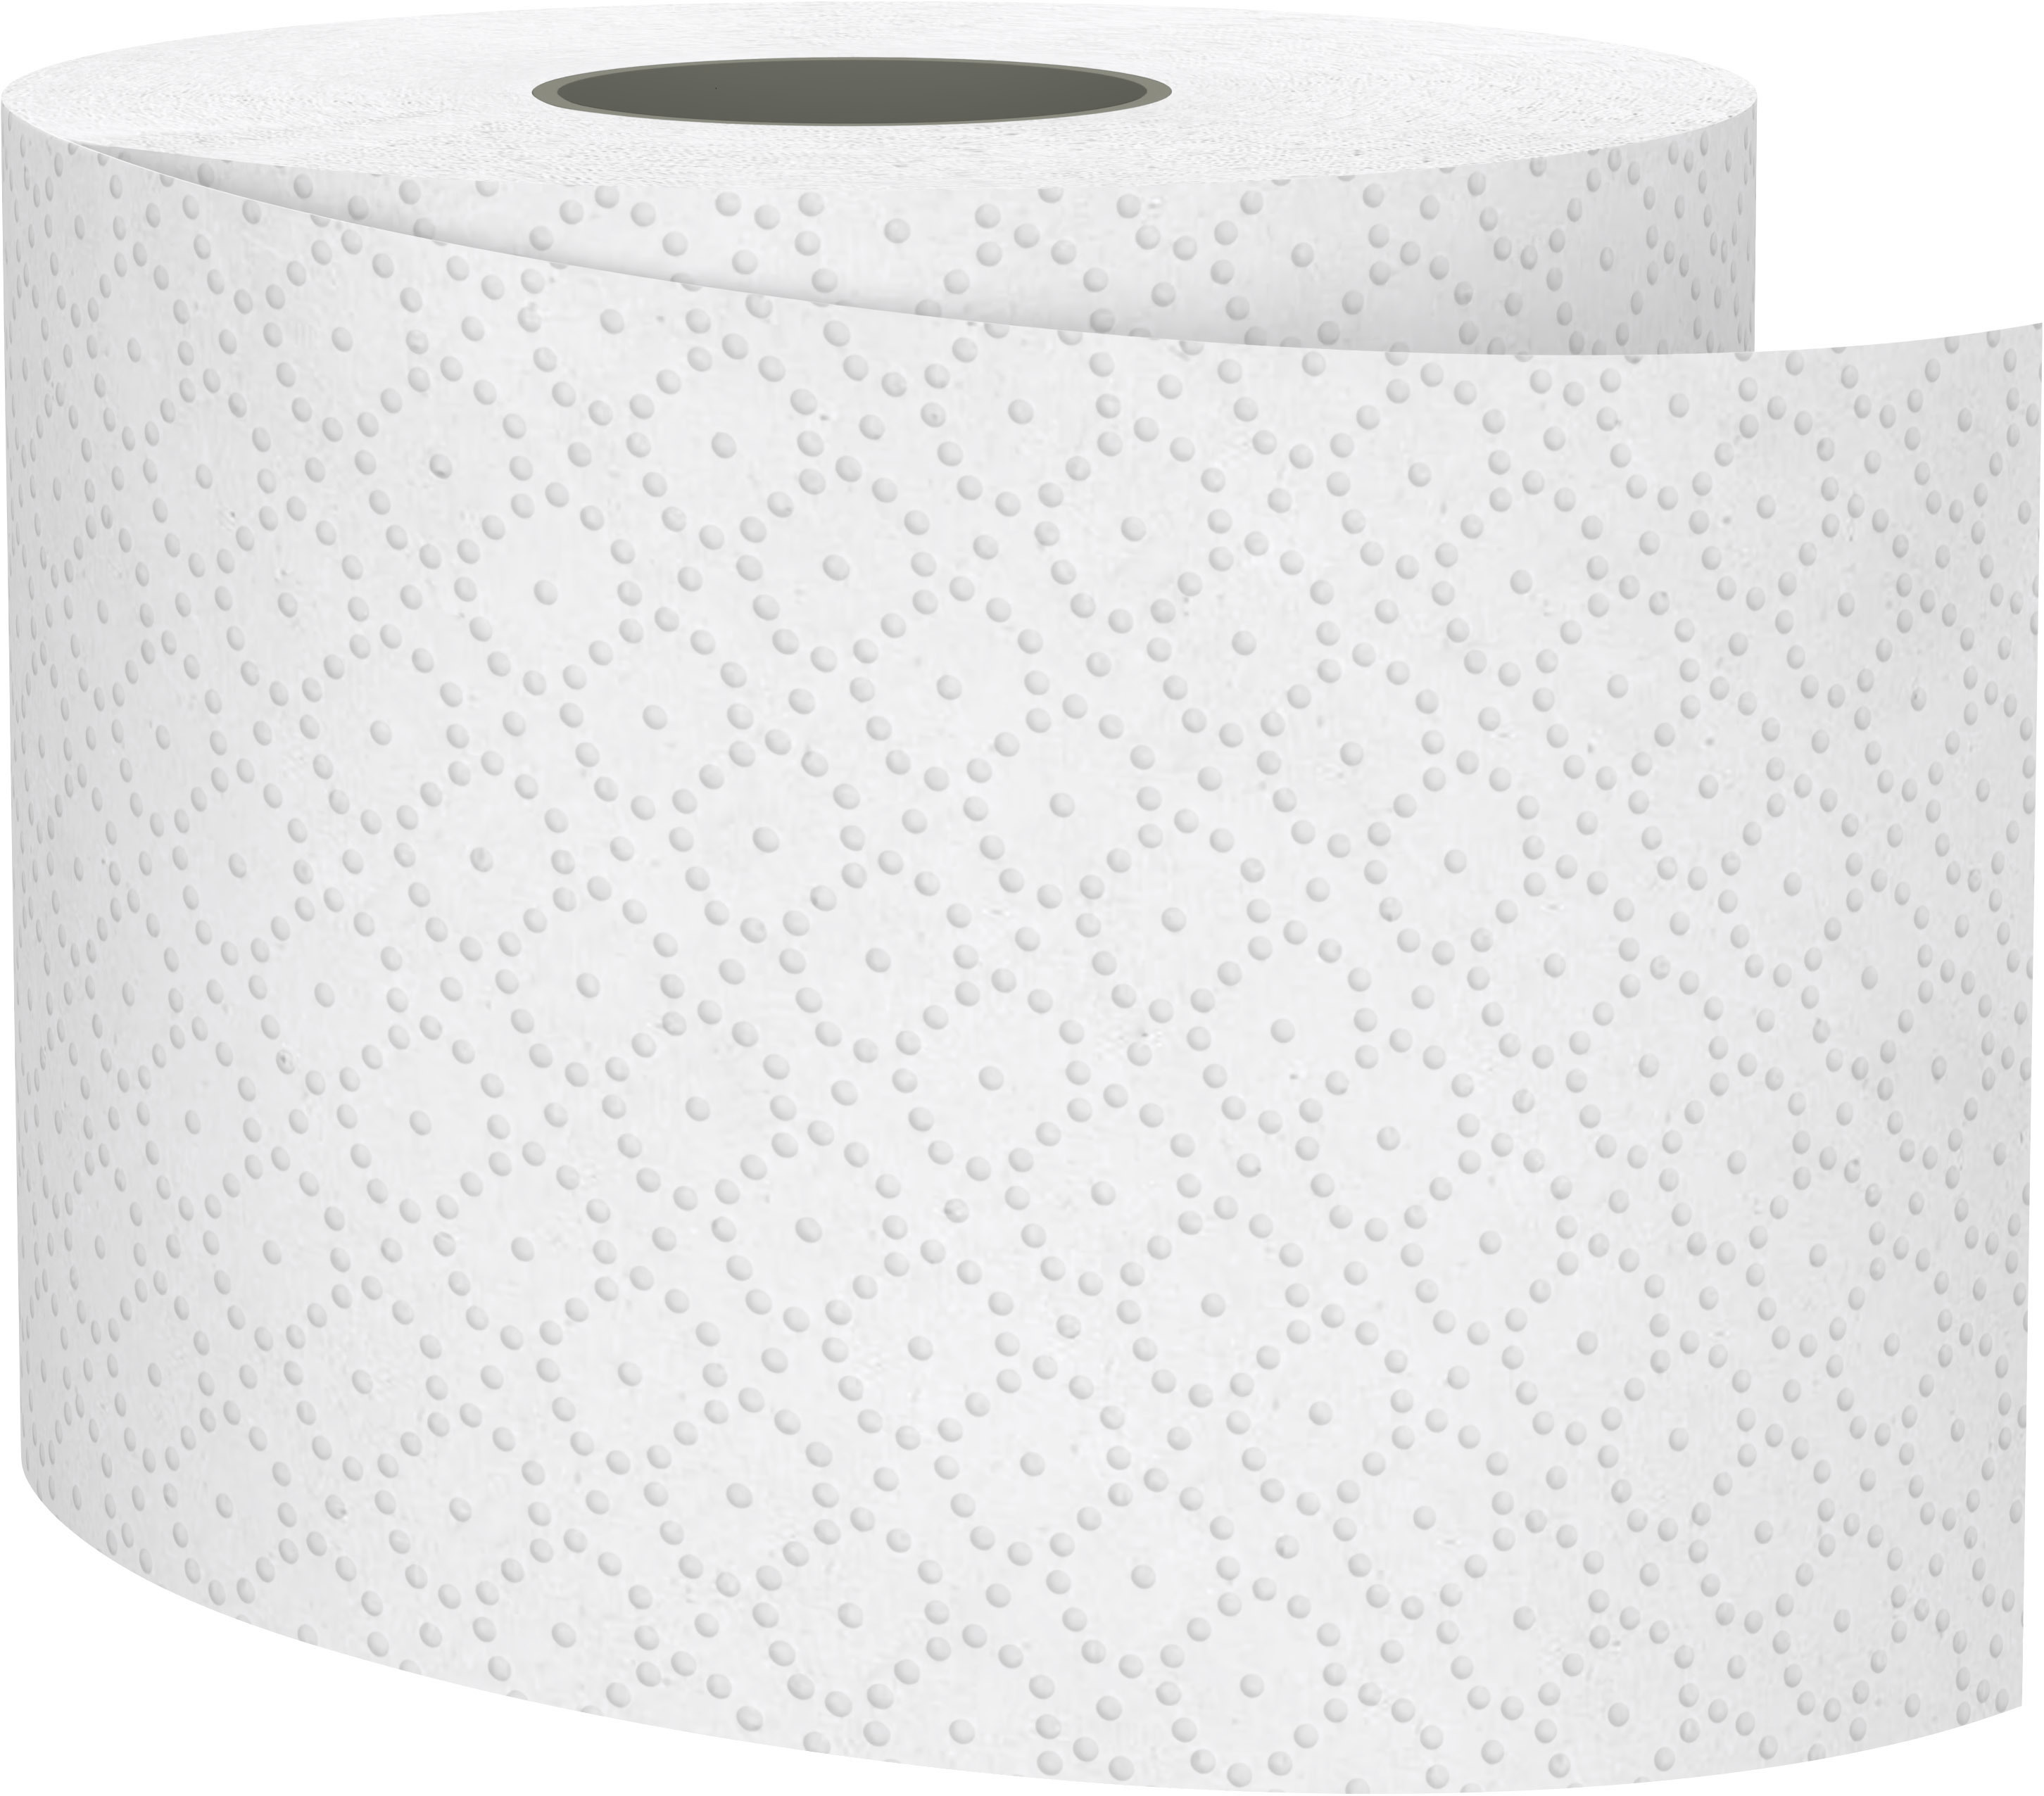 SATINO Papier de toilette Smart 60610 2 plis, 8 roul. 250 flls.